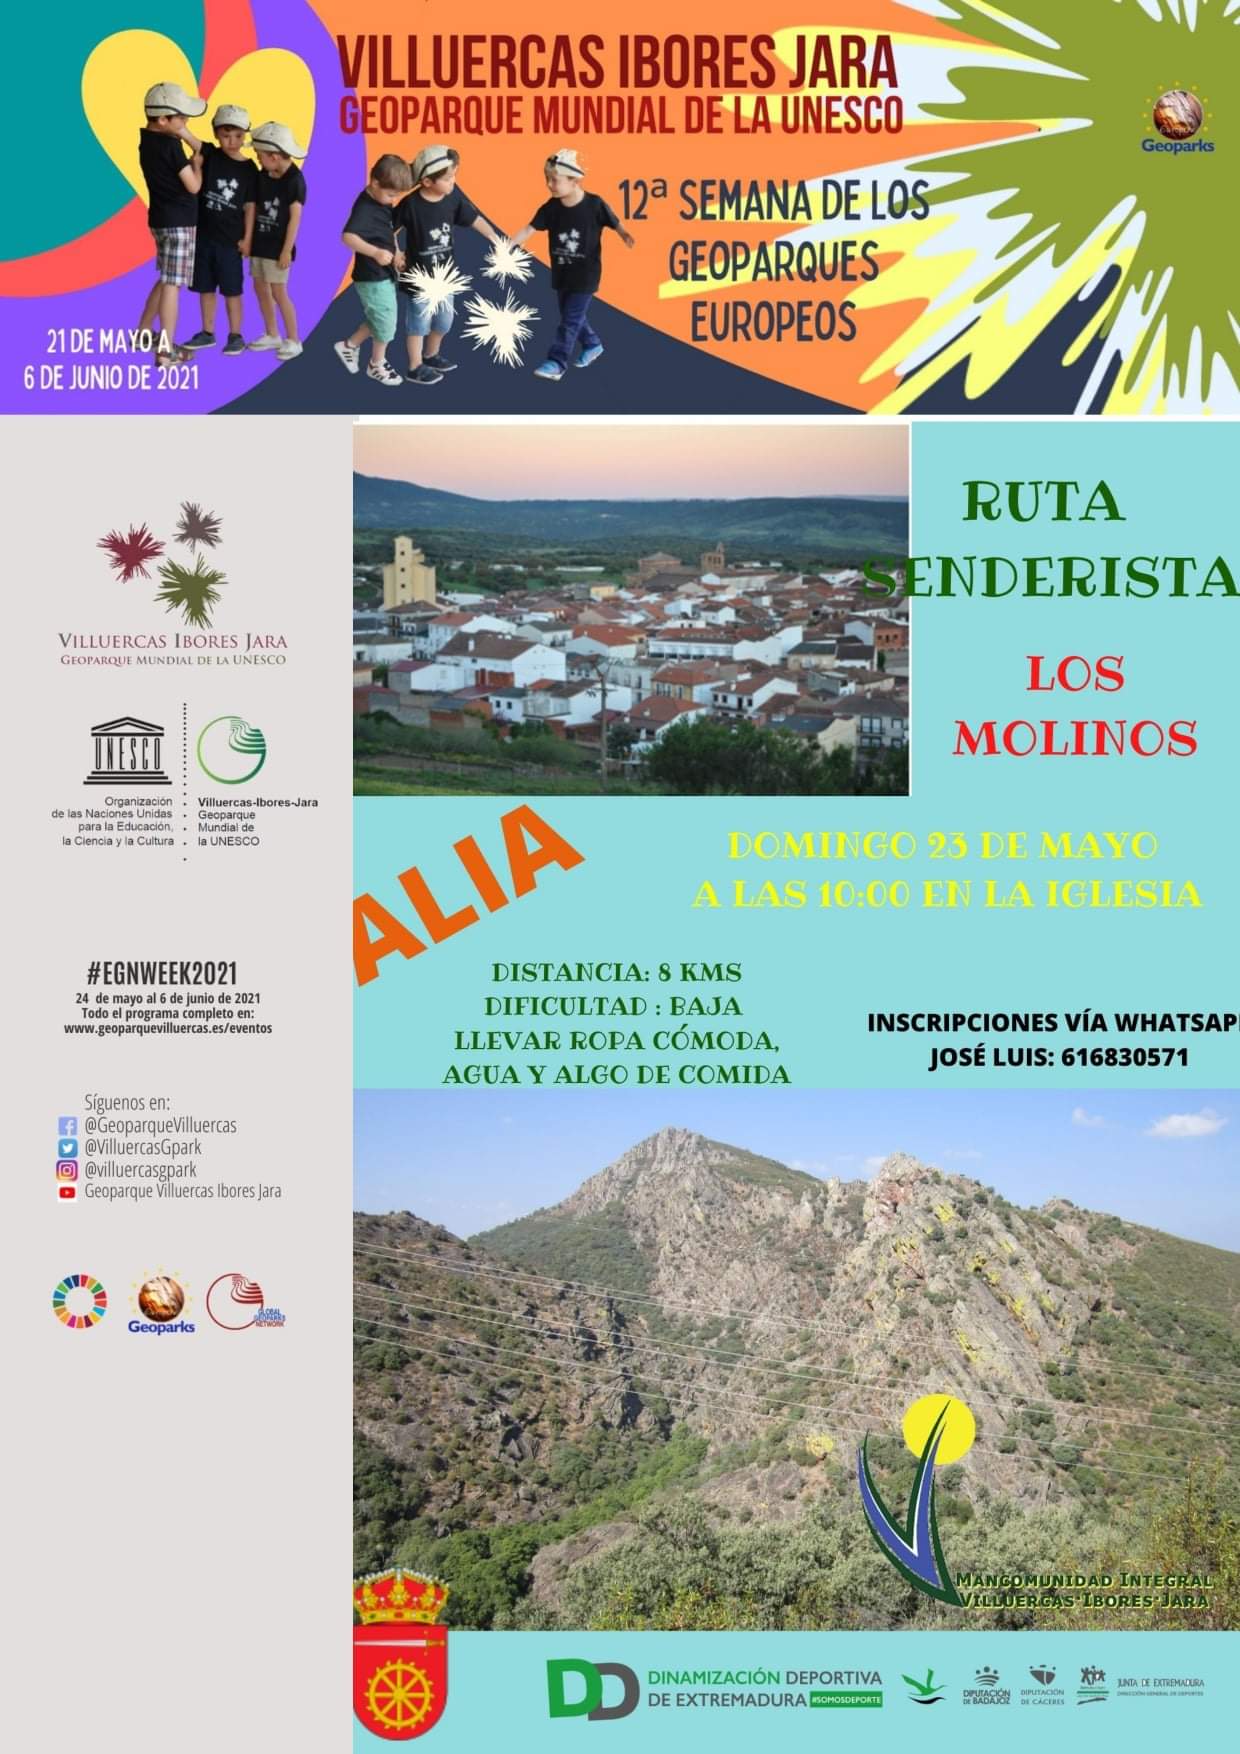 Ruta senderista Los molinos (2021) - Alía (Cáceres)